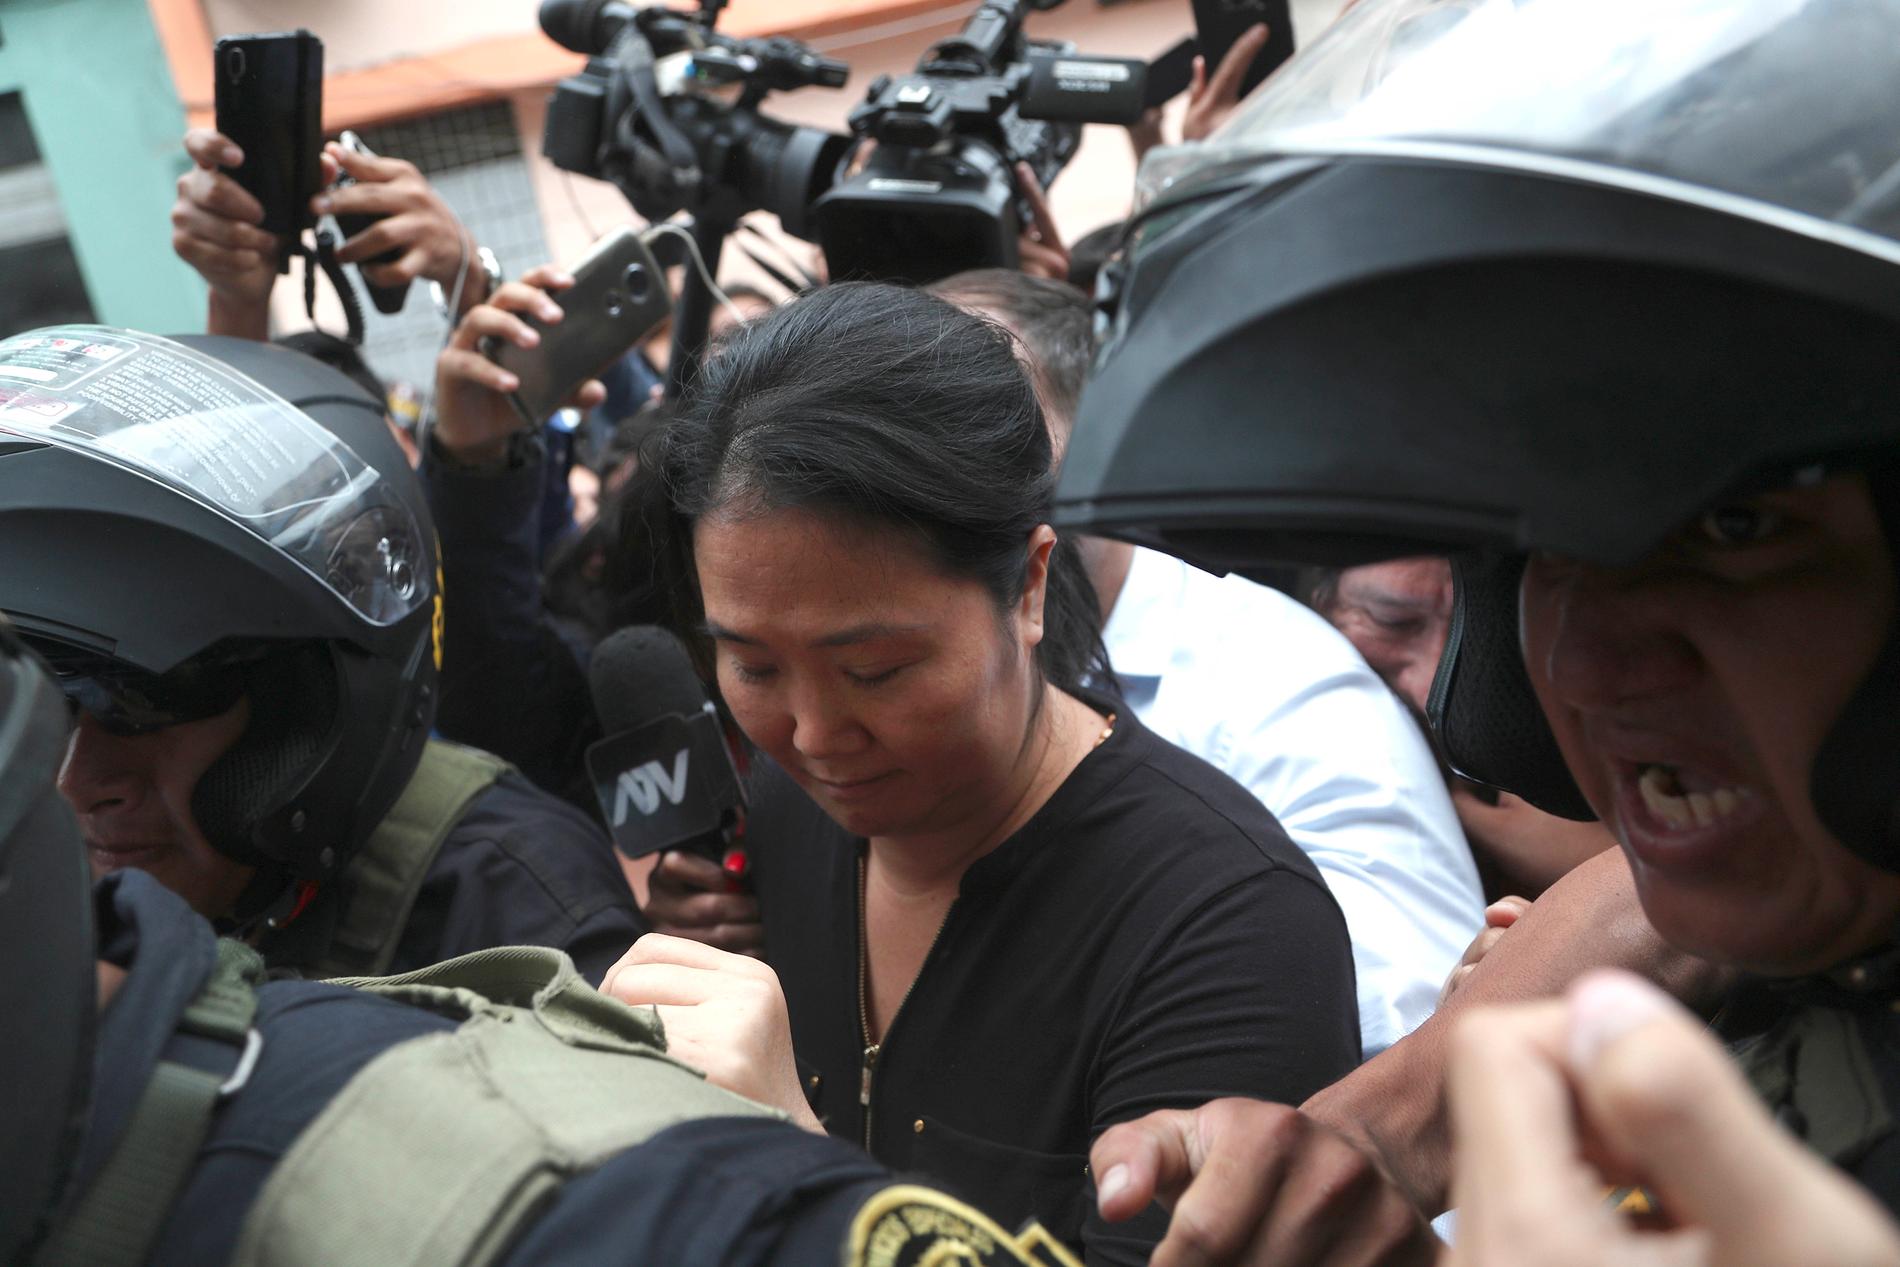 Keiko Fujimori, dotter till tidigare presidenten Alberto Fujimori, eskorteras till domstolsbyggnaden.